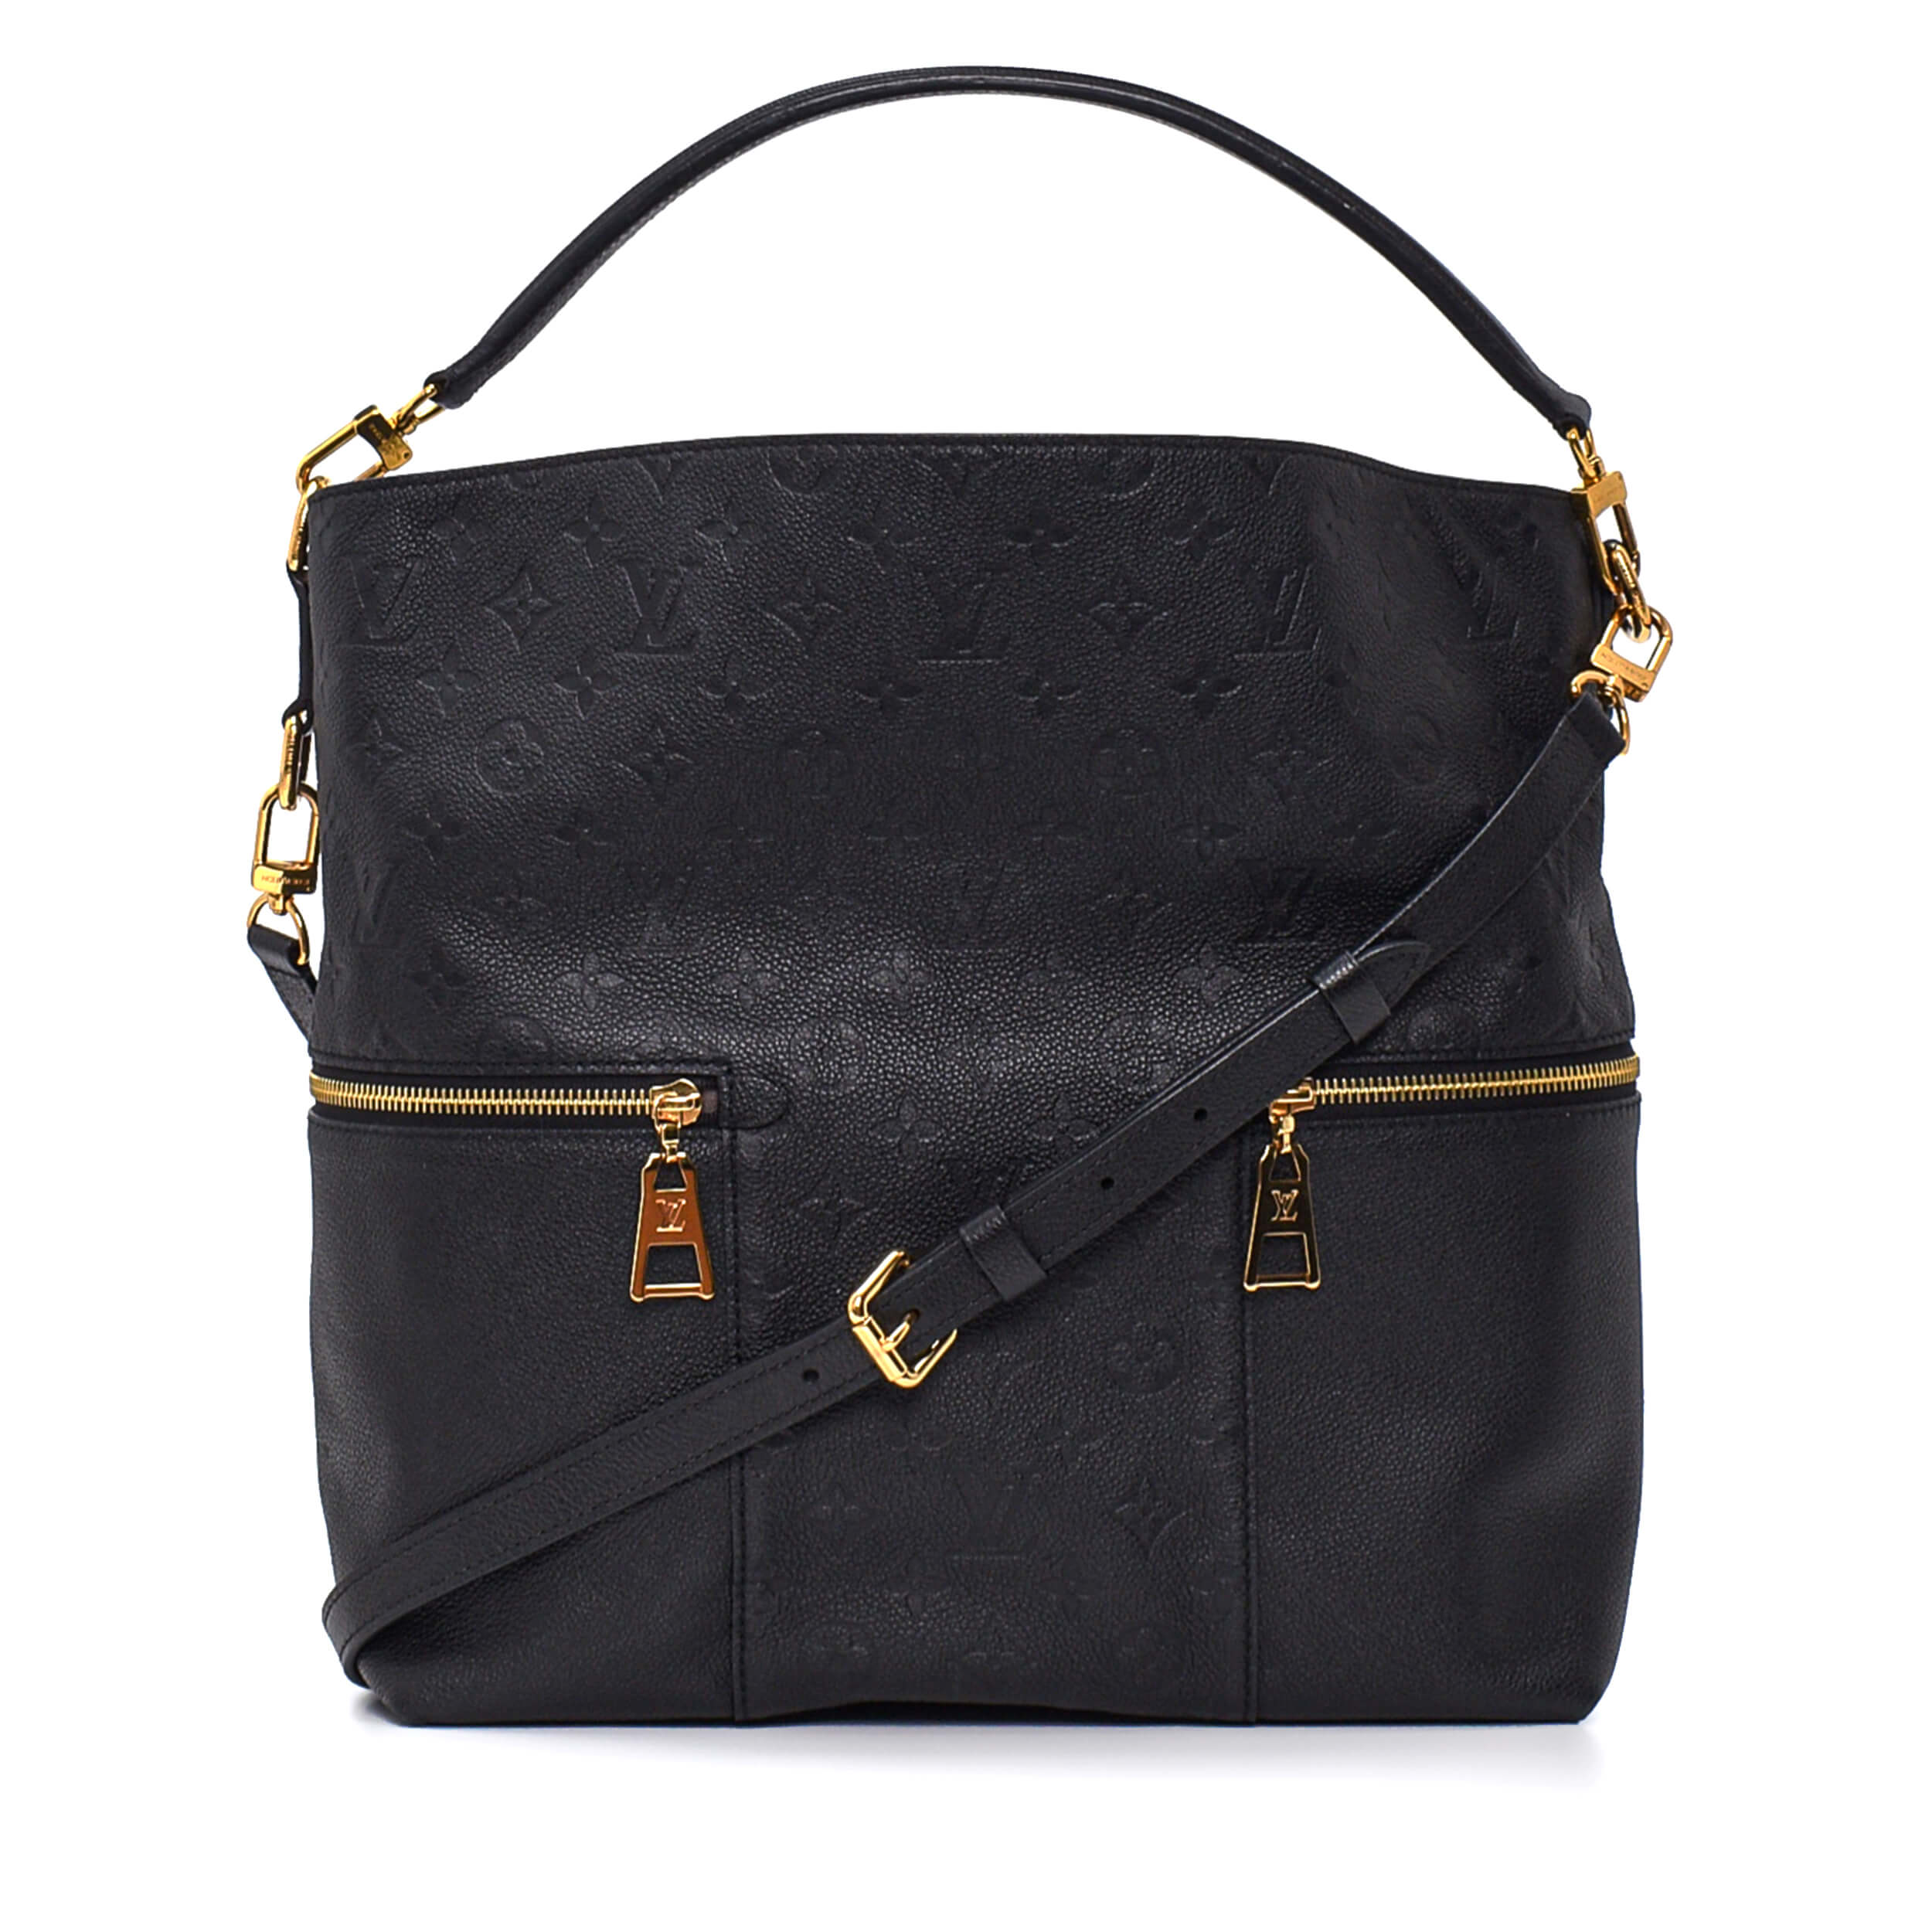 Louis Vuitton - Black Empreinte Leather Melie Bag